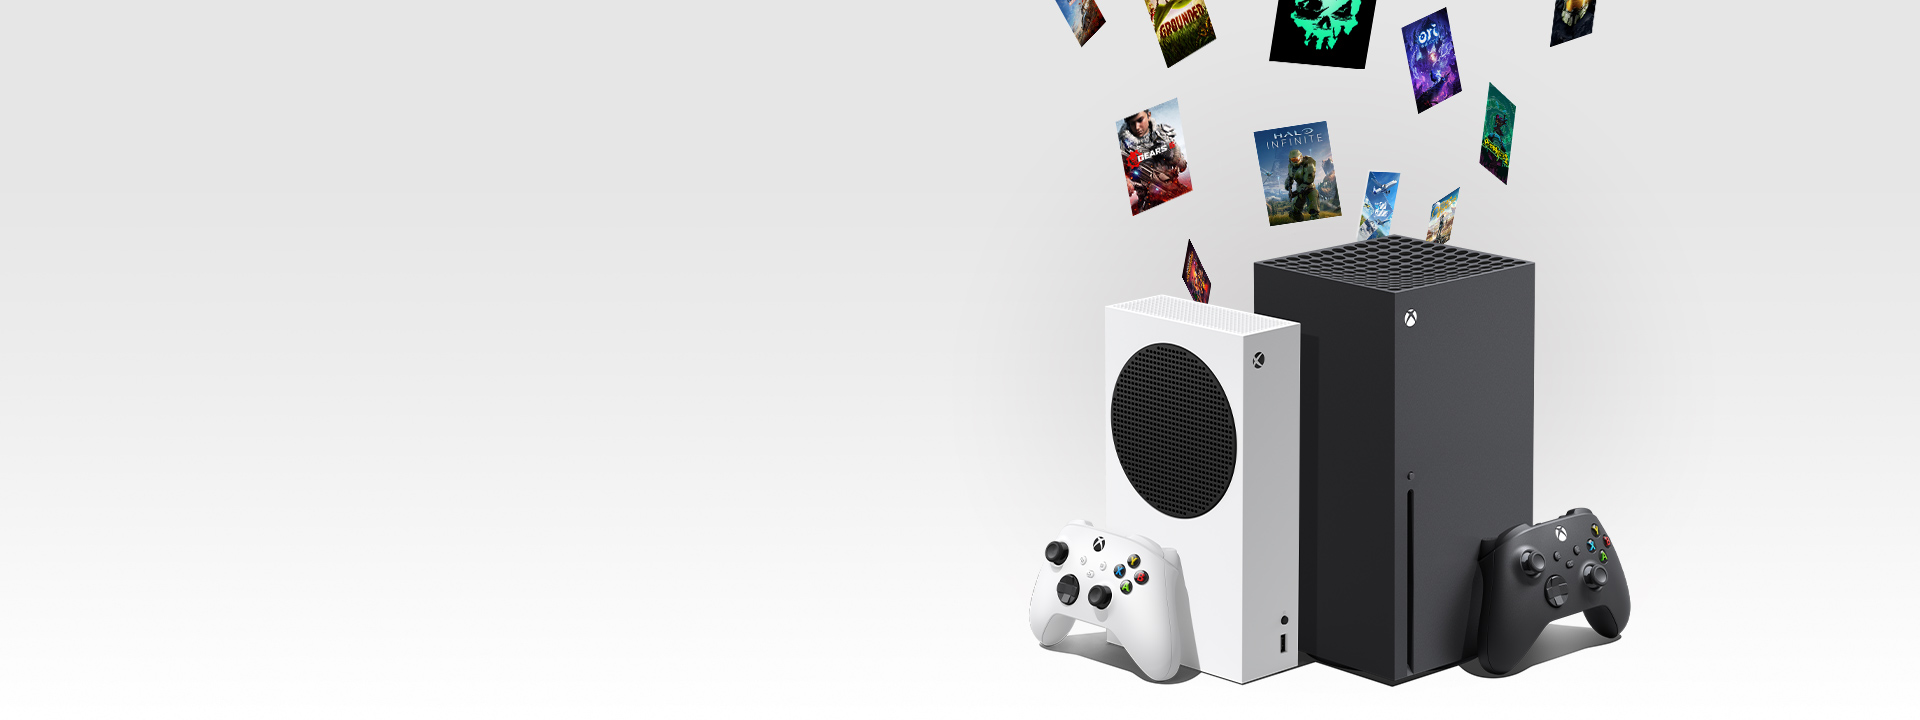 Juegos digitales para Xbox descargándose en las consolas Xbox Series X y Xbox Series S.